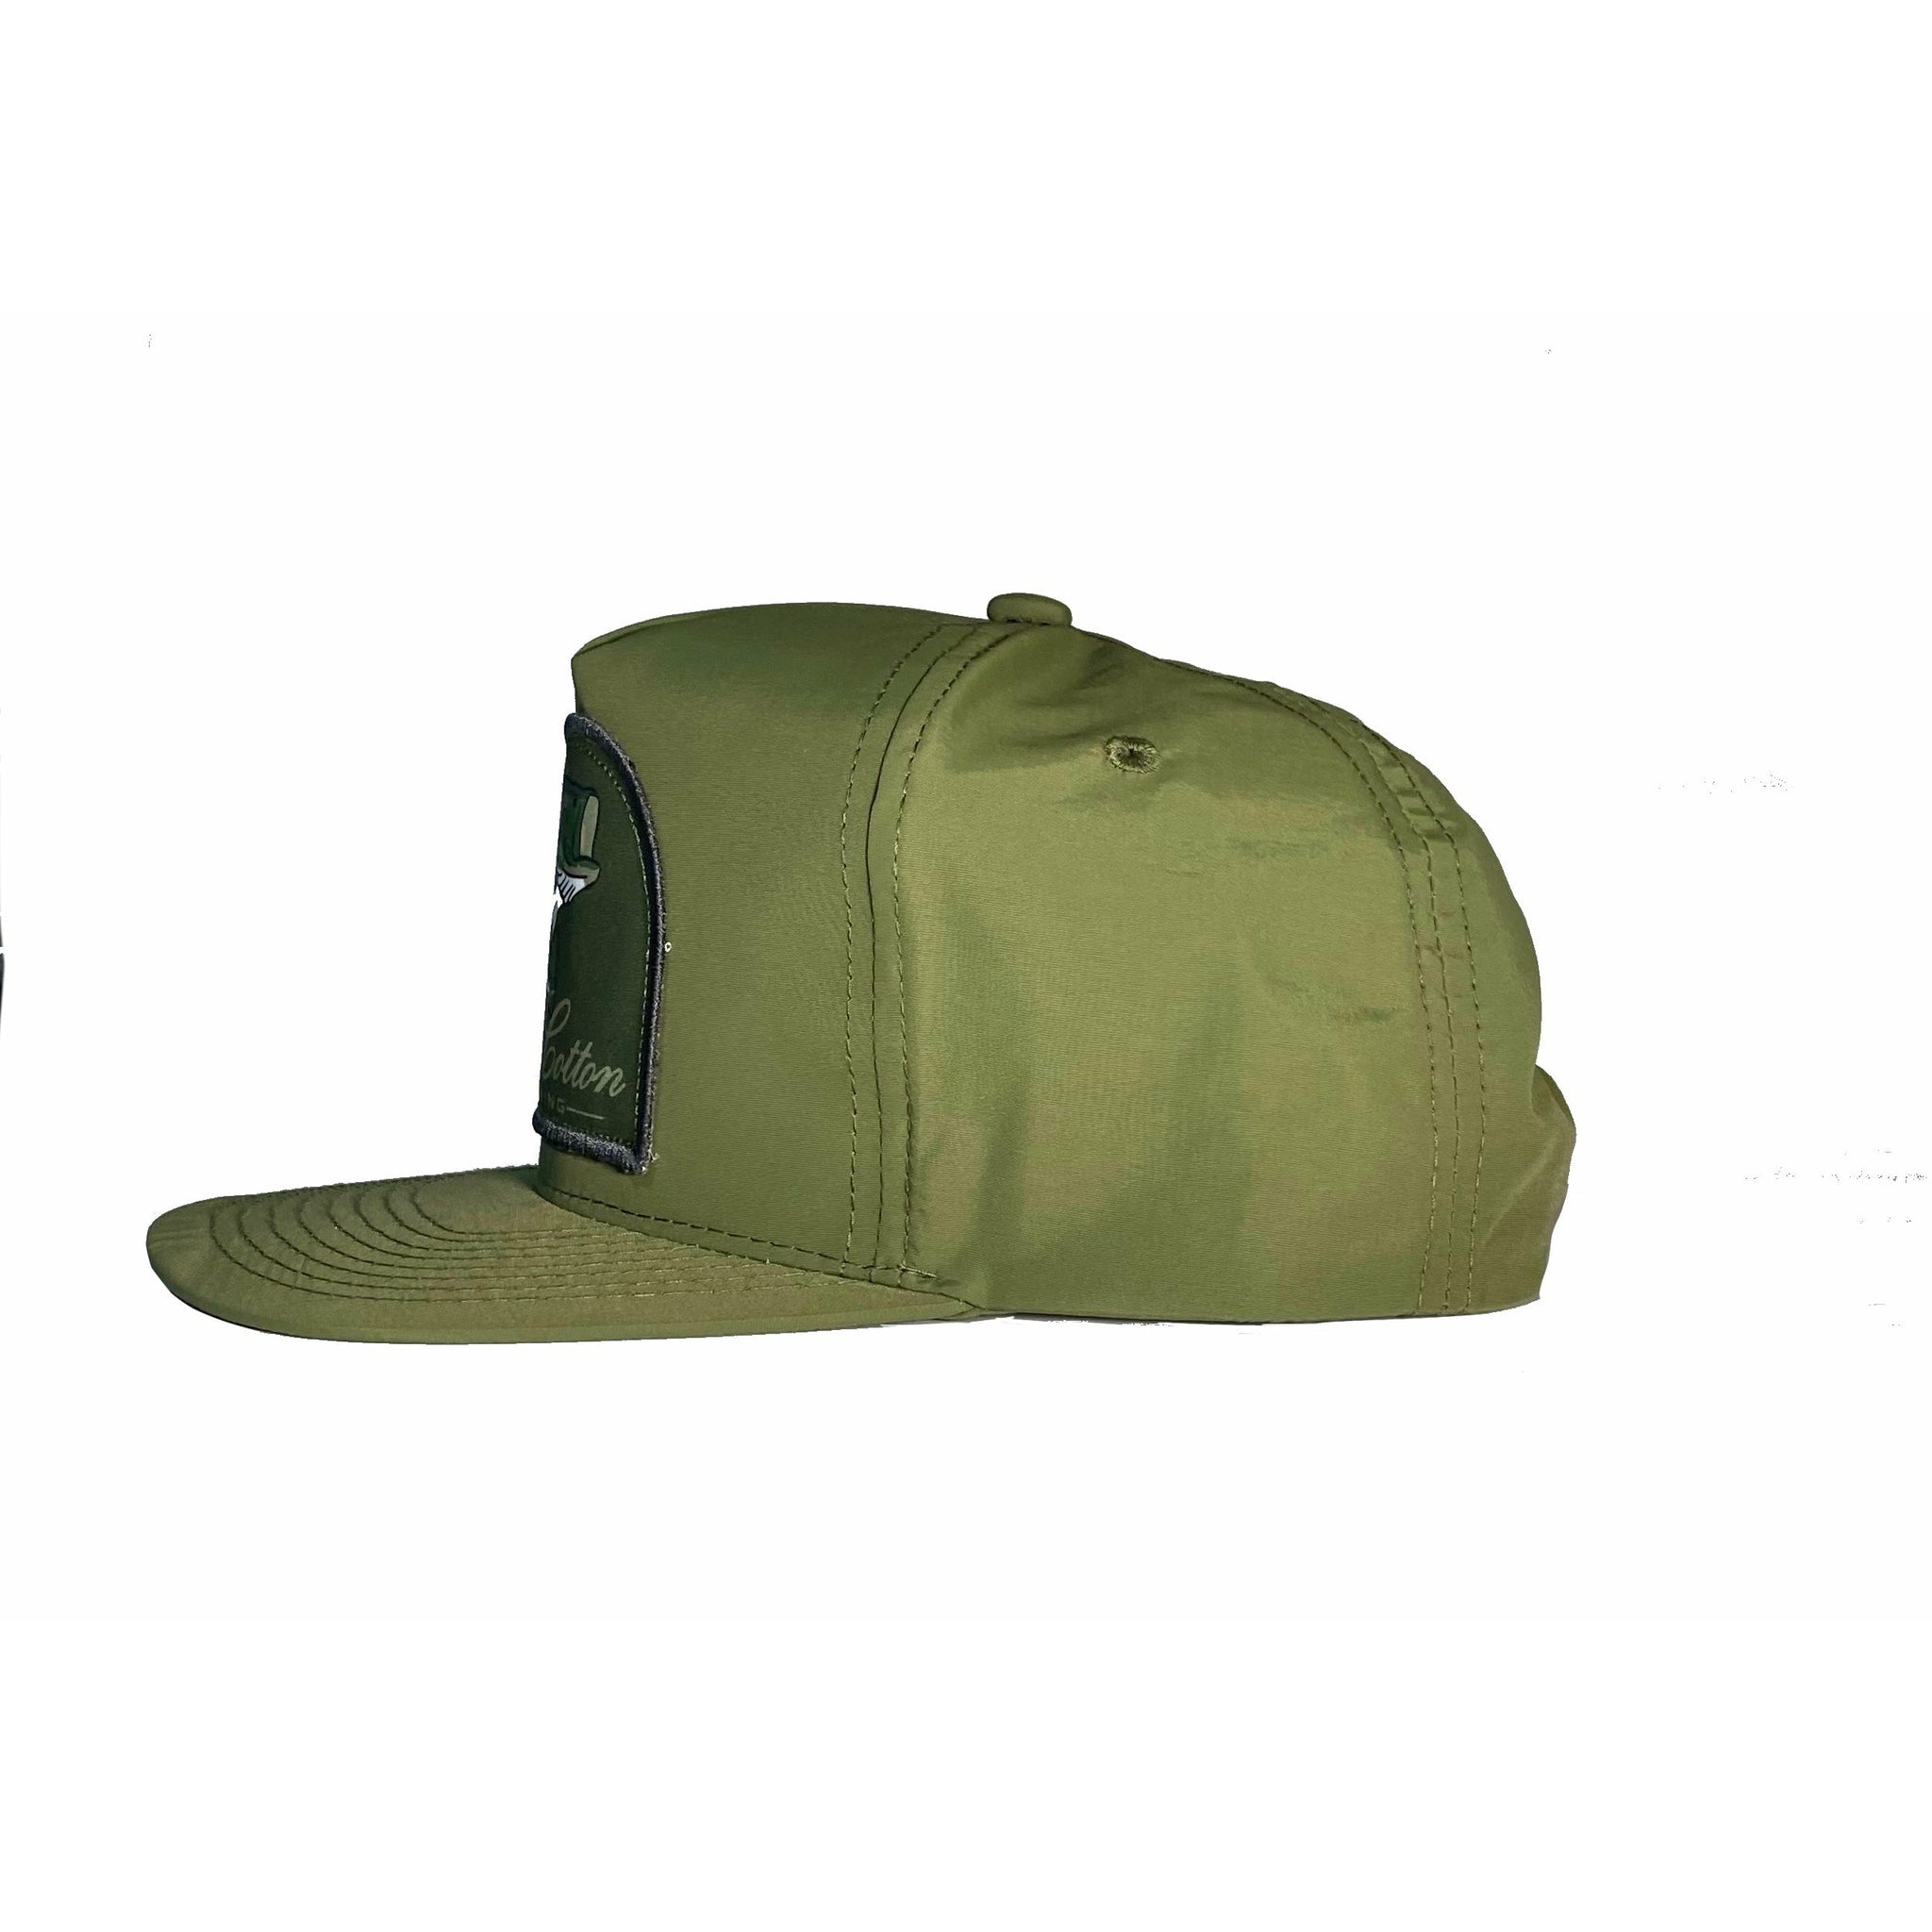 The “Buxahatchee” Hat